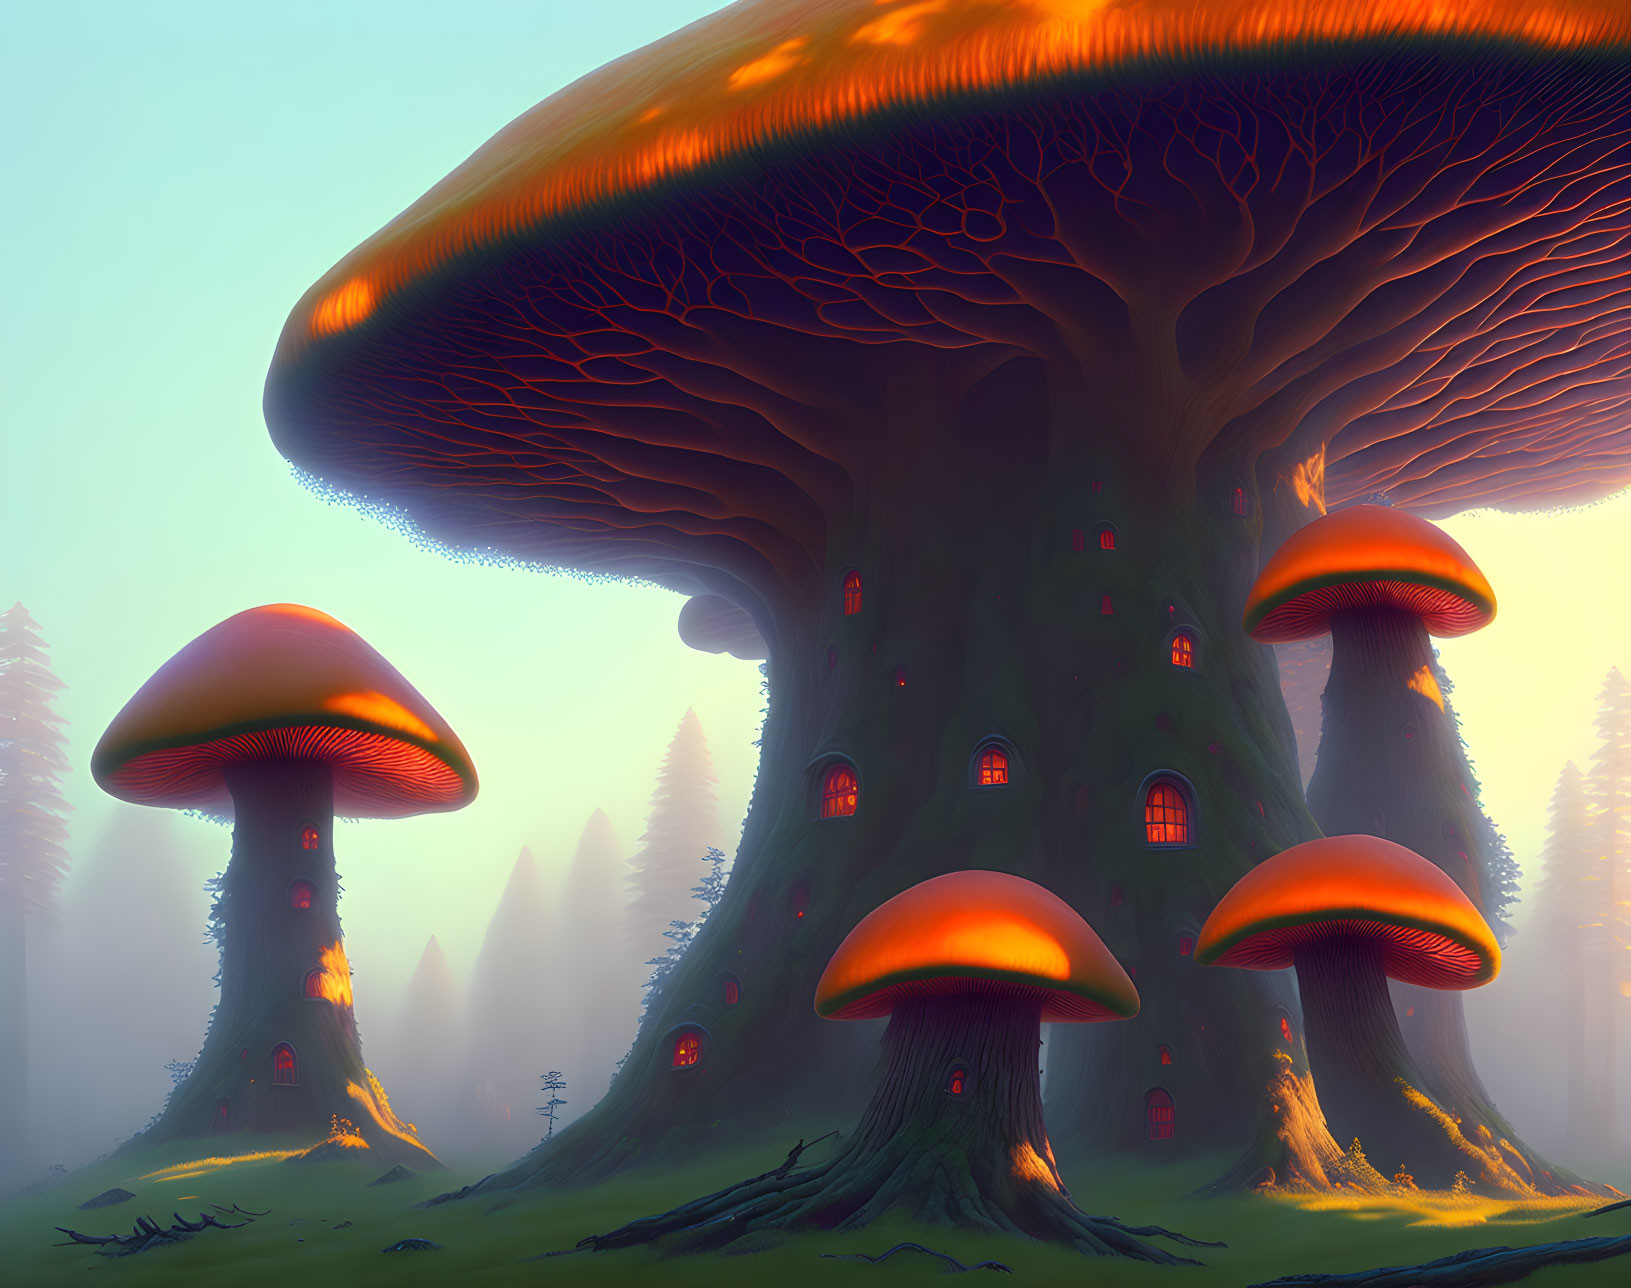 Home of the Mushroom People 